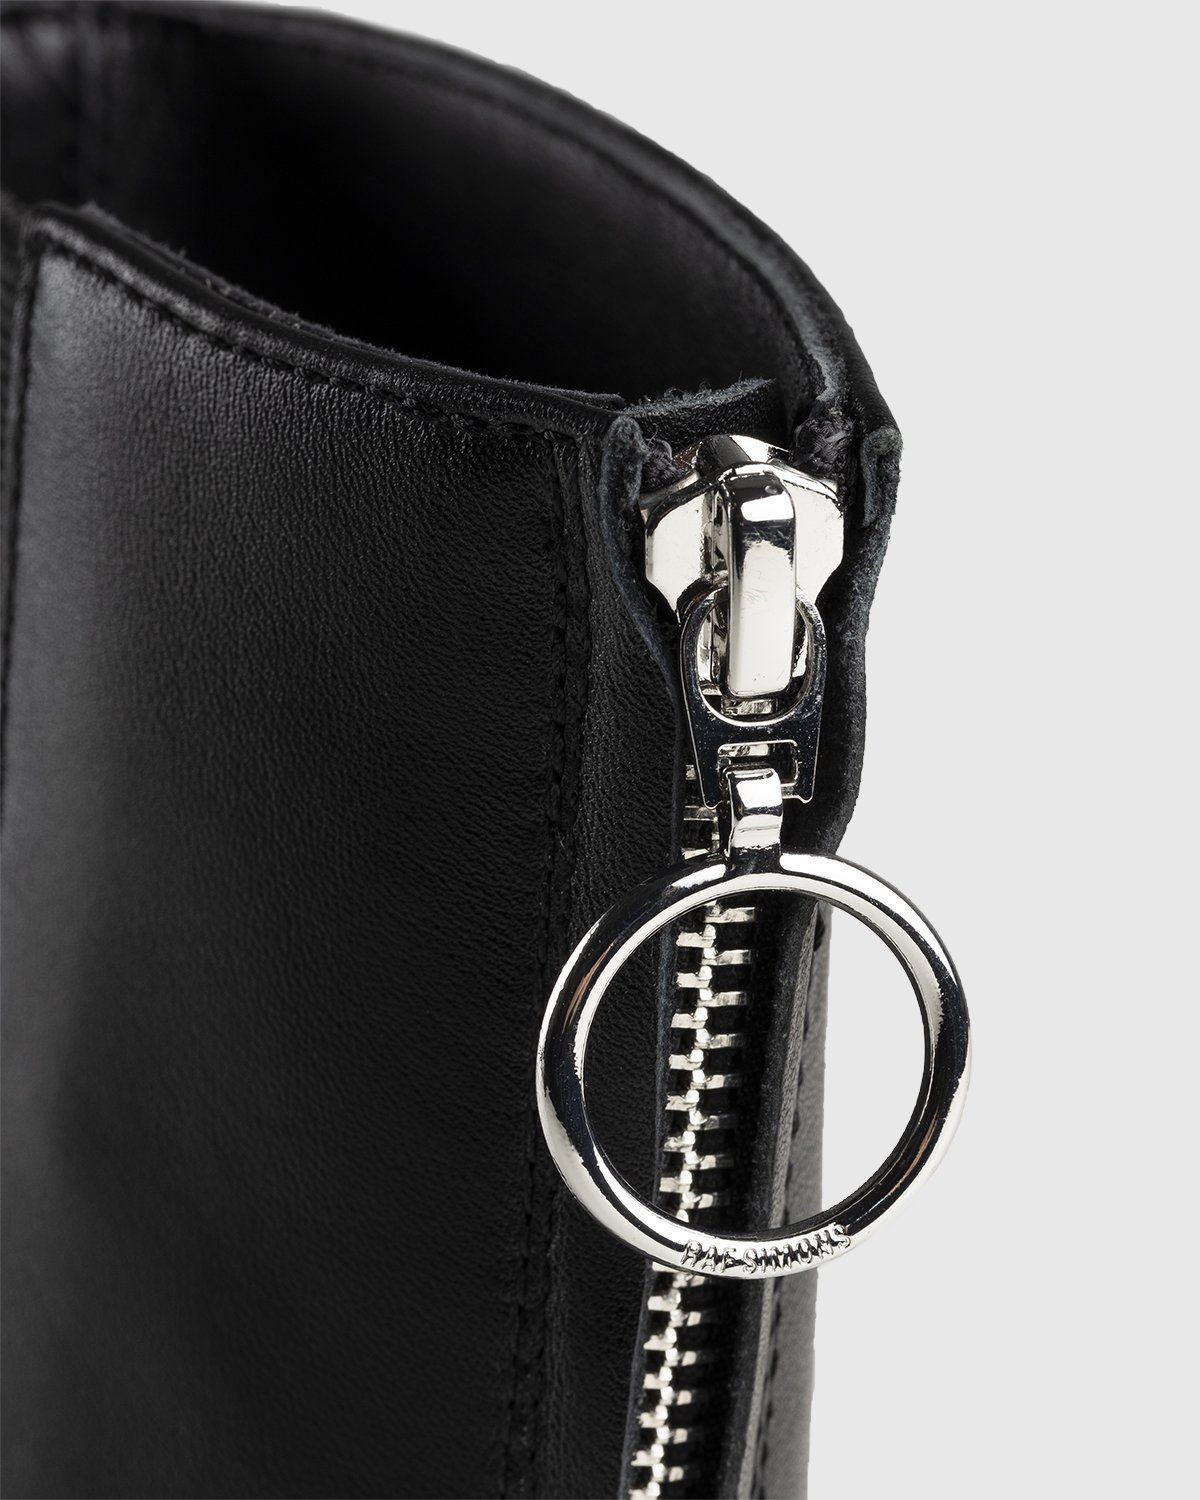 Jil Sander – Chelsea Boots Black - Image 6